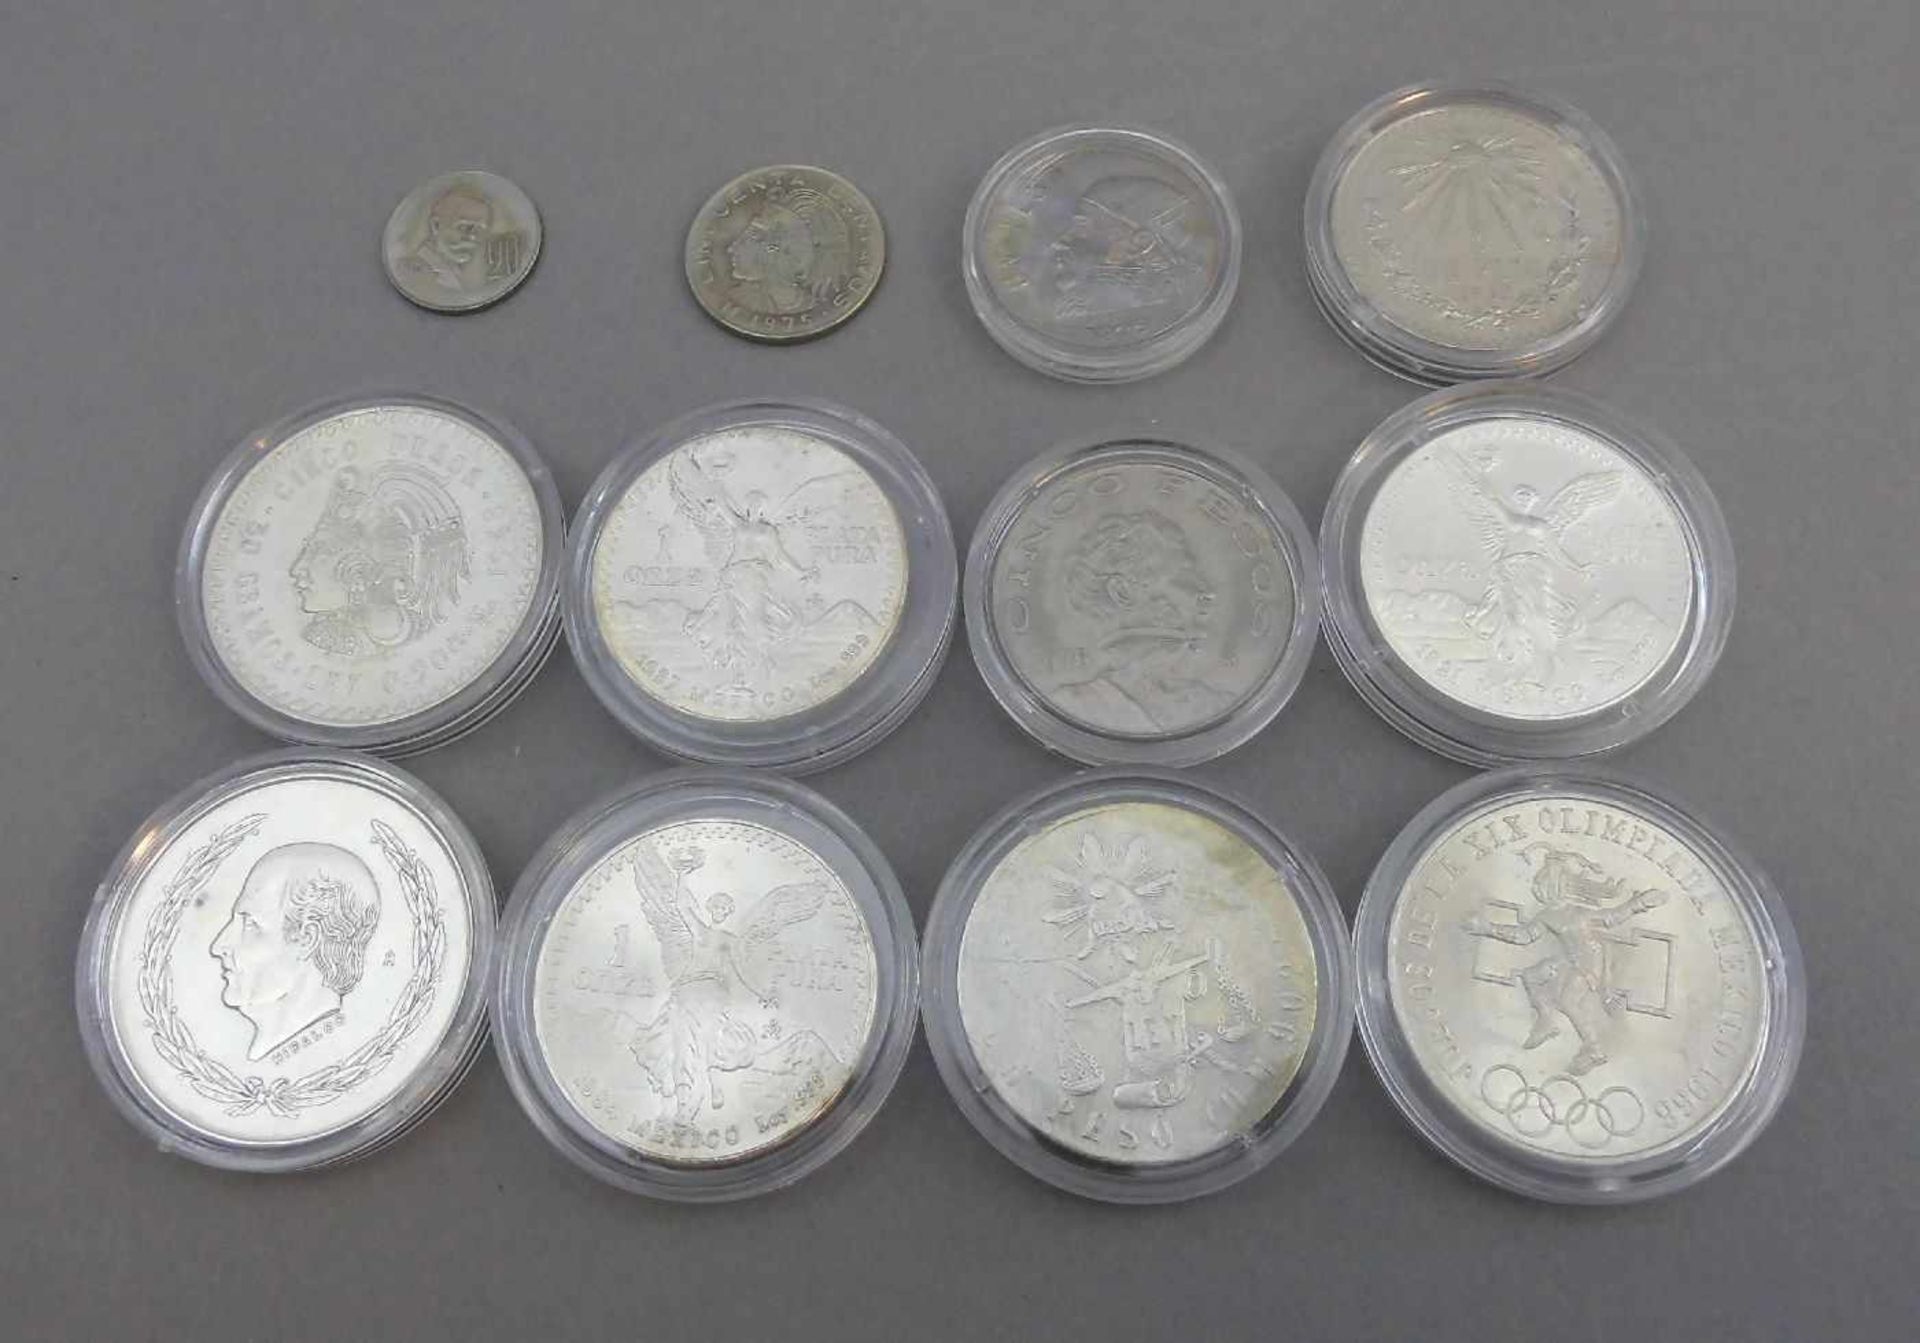 GROSSES KONVOLUT MÜNZEN / SILBER-MÜNZEN - MEXIKO / silver-coins, 19./ 20. Jh., 12 Münzen mit - Image 2 of 2